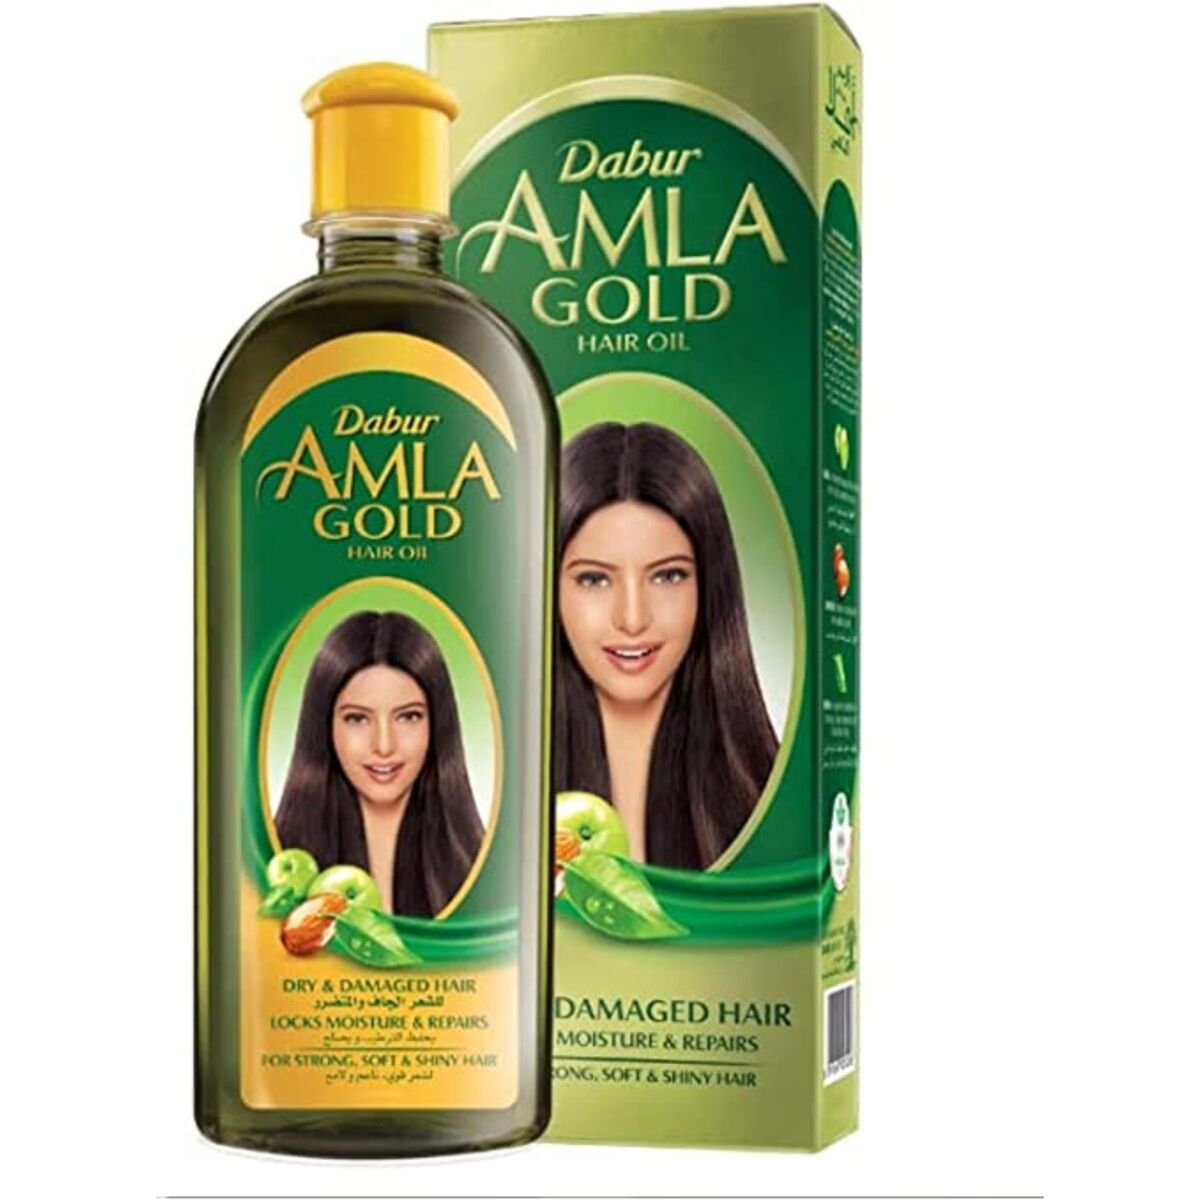 اشتري قم بشراء دابر املا جولد زيت الشعر 200 مل Online at Best Price من الموقع - من لولو هايبر ماركت Hair Oils في مصر